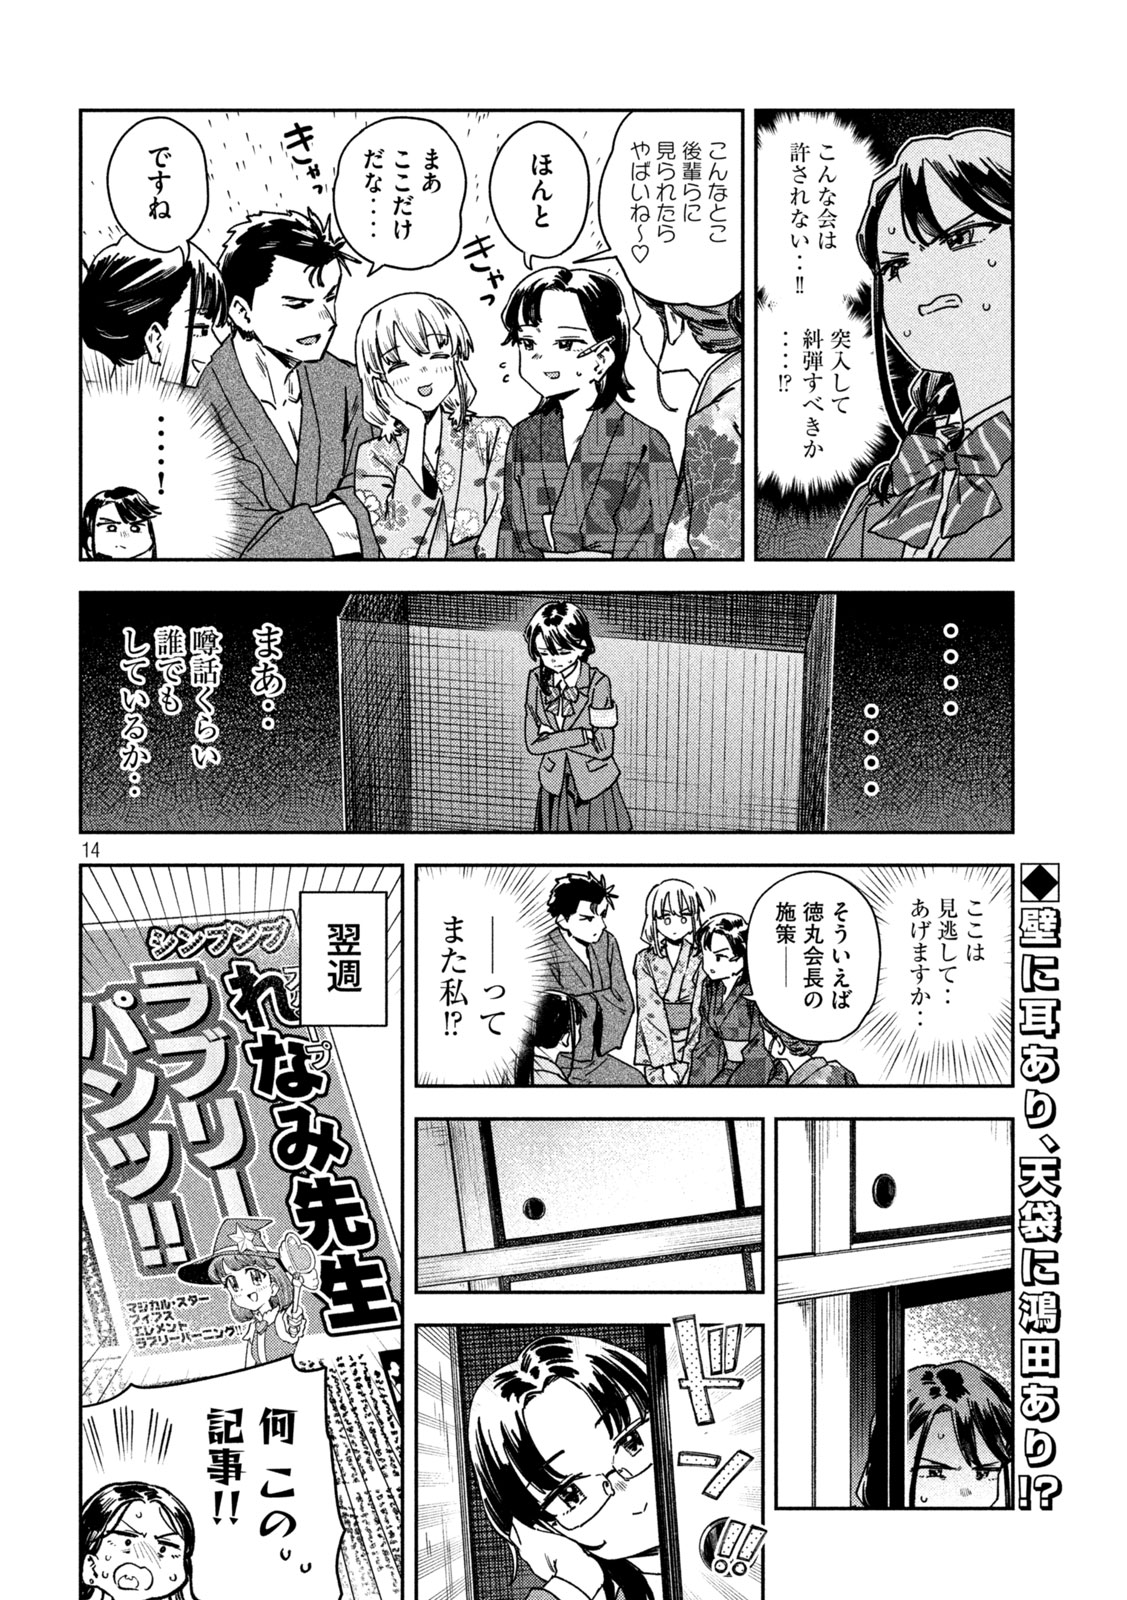 Myo-chan Sensei wa Kaku Katariki - Chapter 42 - Page 14